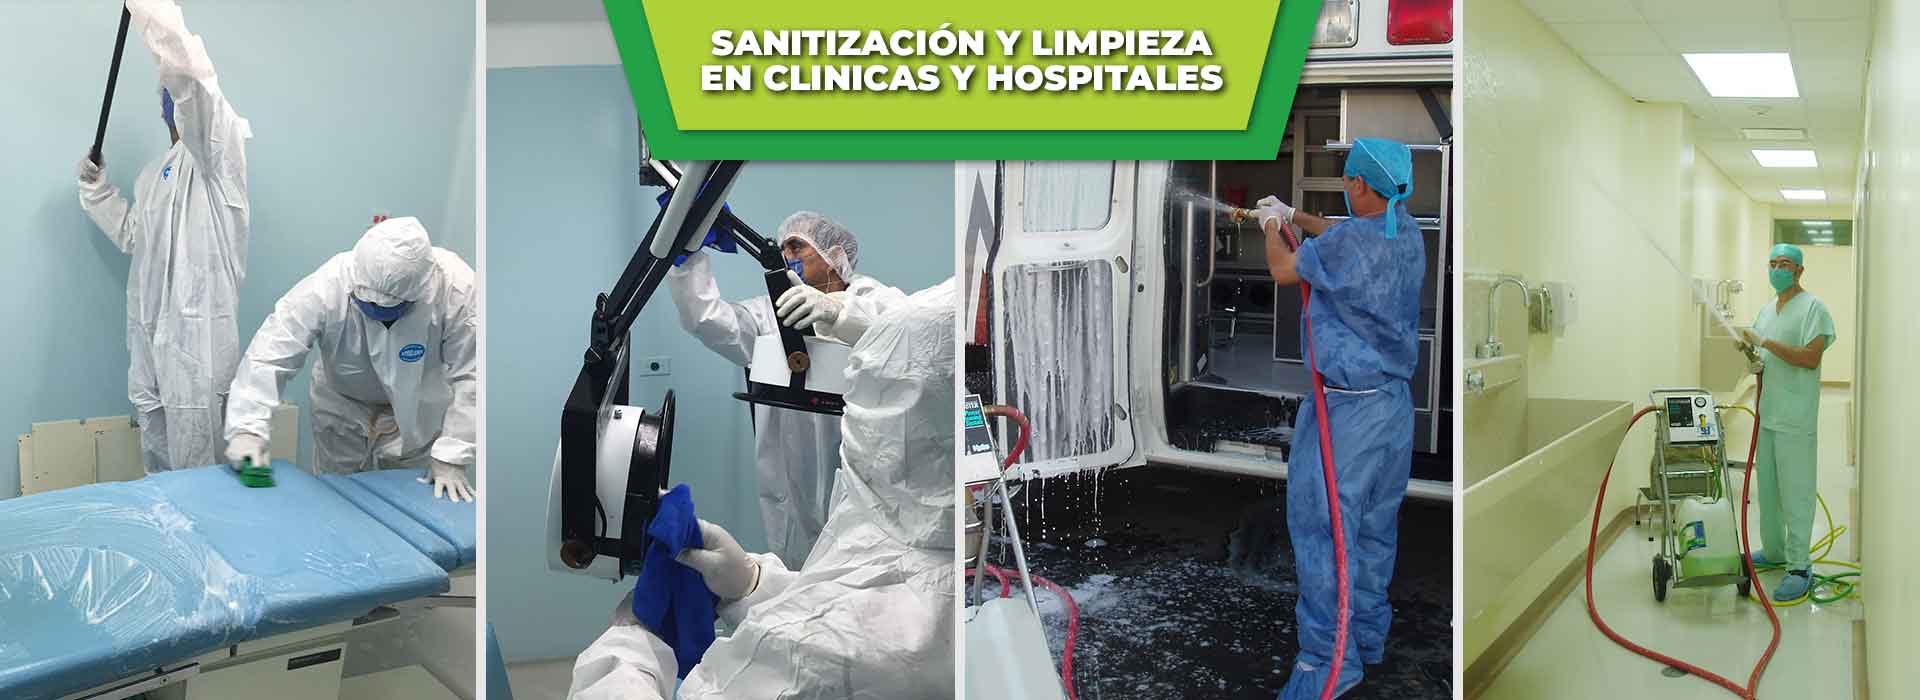 sanitizacion-y-limpieza-de-clinicas-y-hospitales